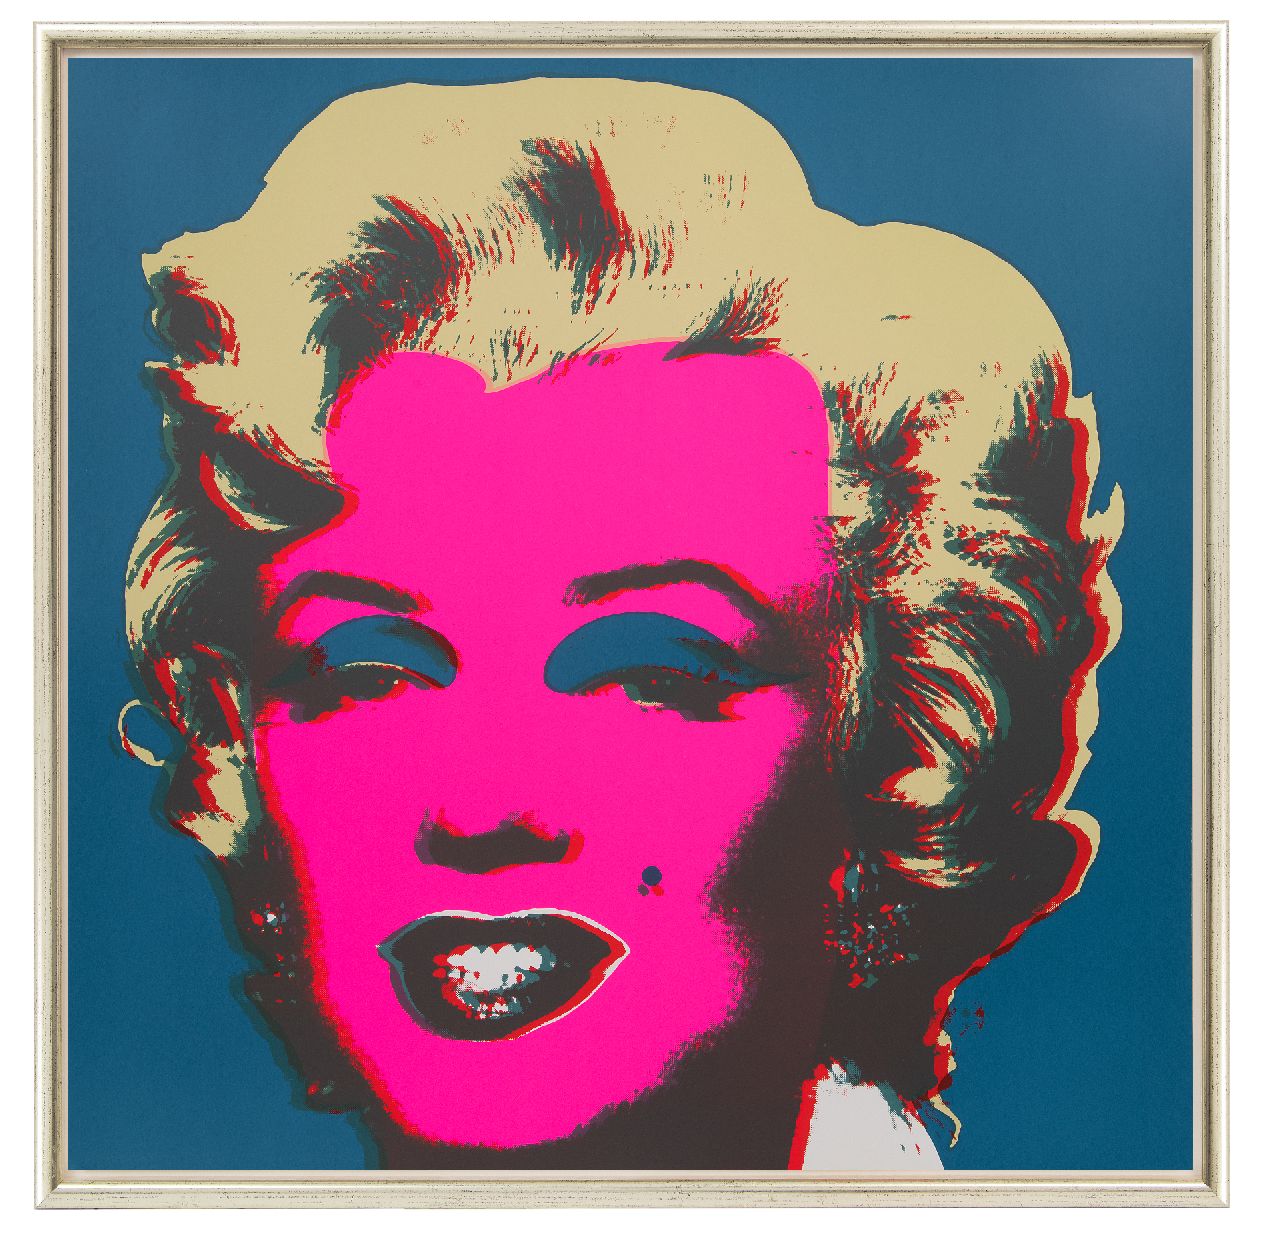 Naar Andy Warhol   | Naar Andy Warhol, Marilyn Monroe, screenprint 94.5 x 94.5 cm